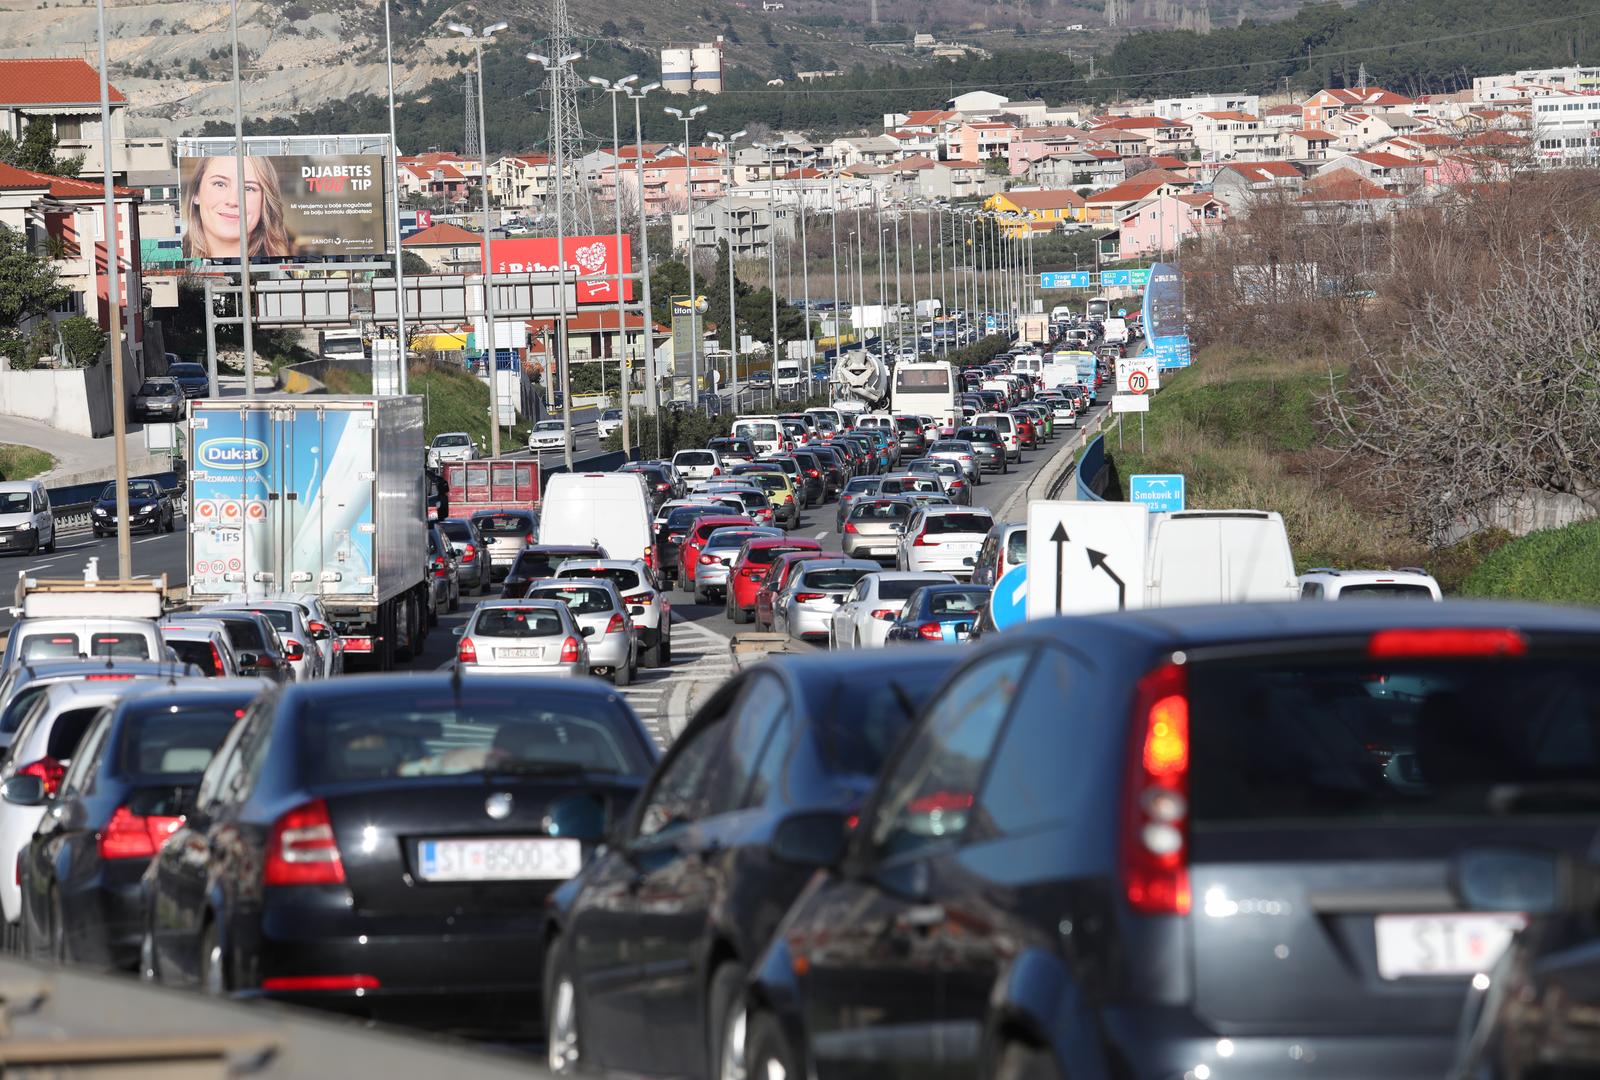 11.02.2021., Split - Velike guzve u prometu stvorile su se zbog zatvaranja brze ceste Solin-Klis zbog ocevida nakon teske prometne nesrece.rPhoto: Ivo Cagalj/PIXSELL